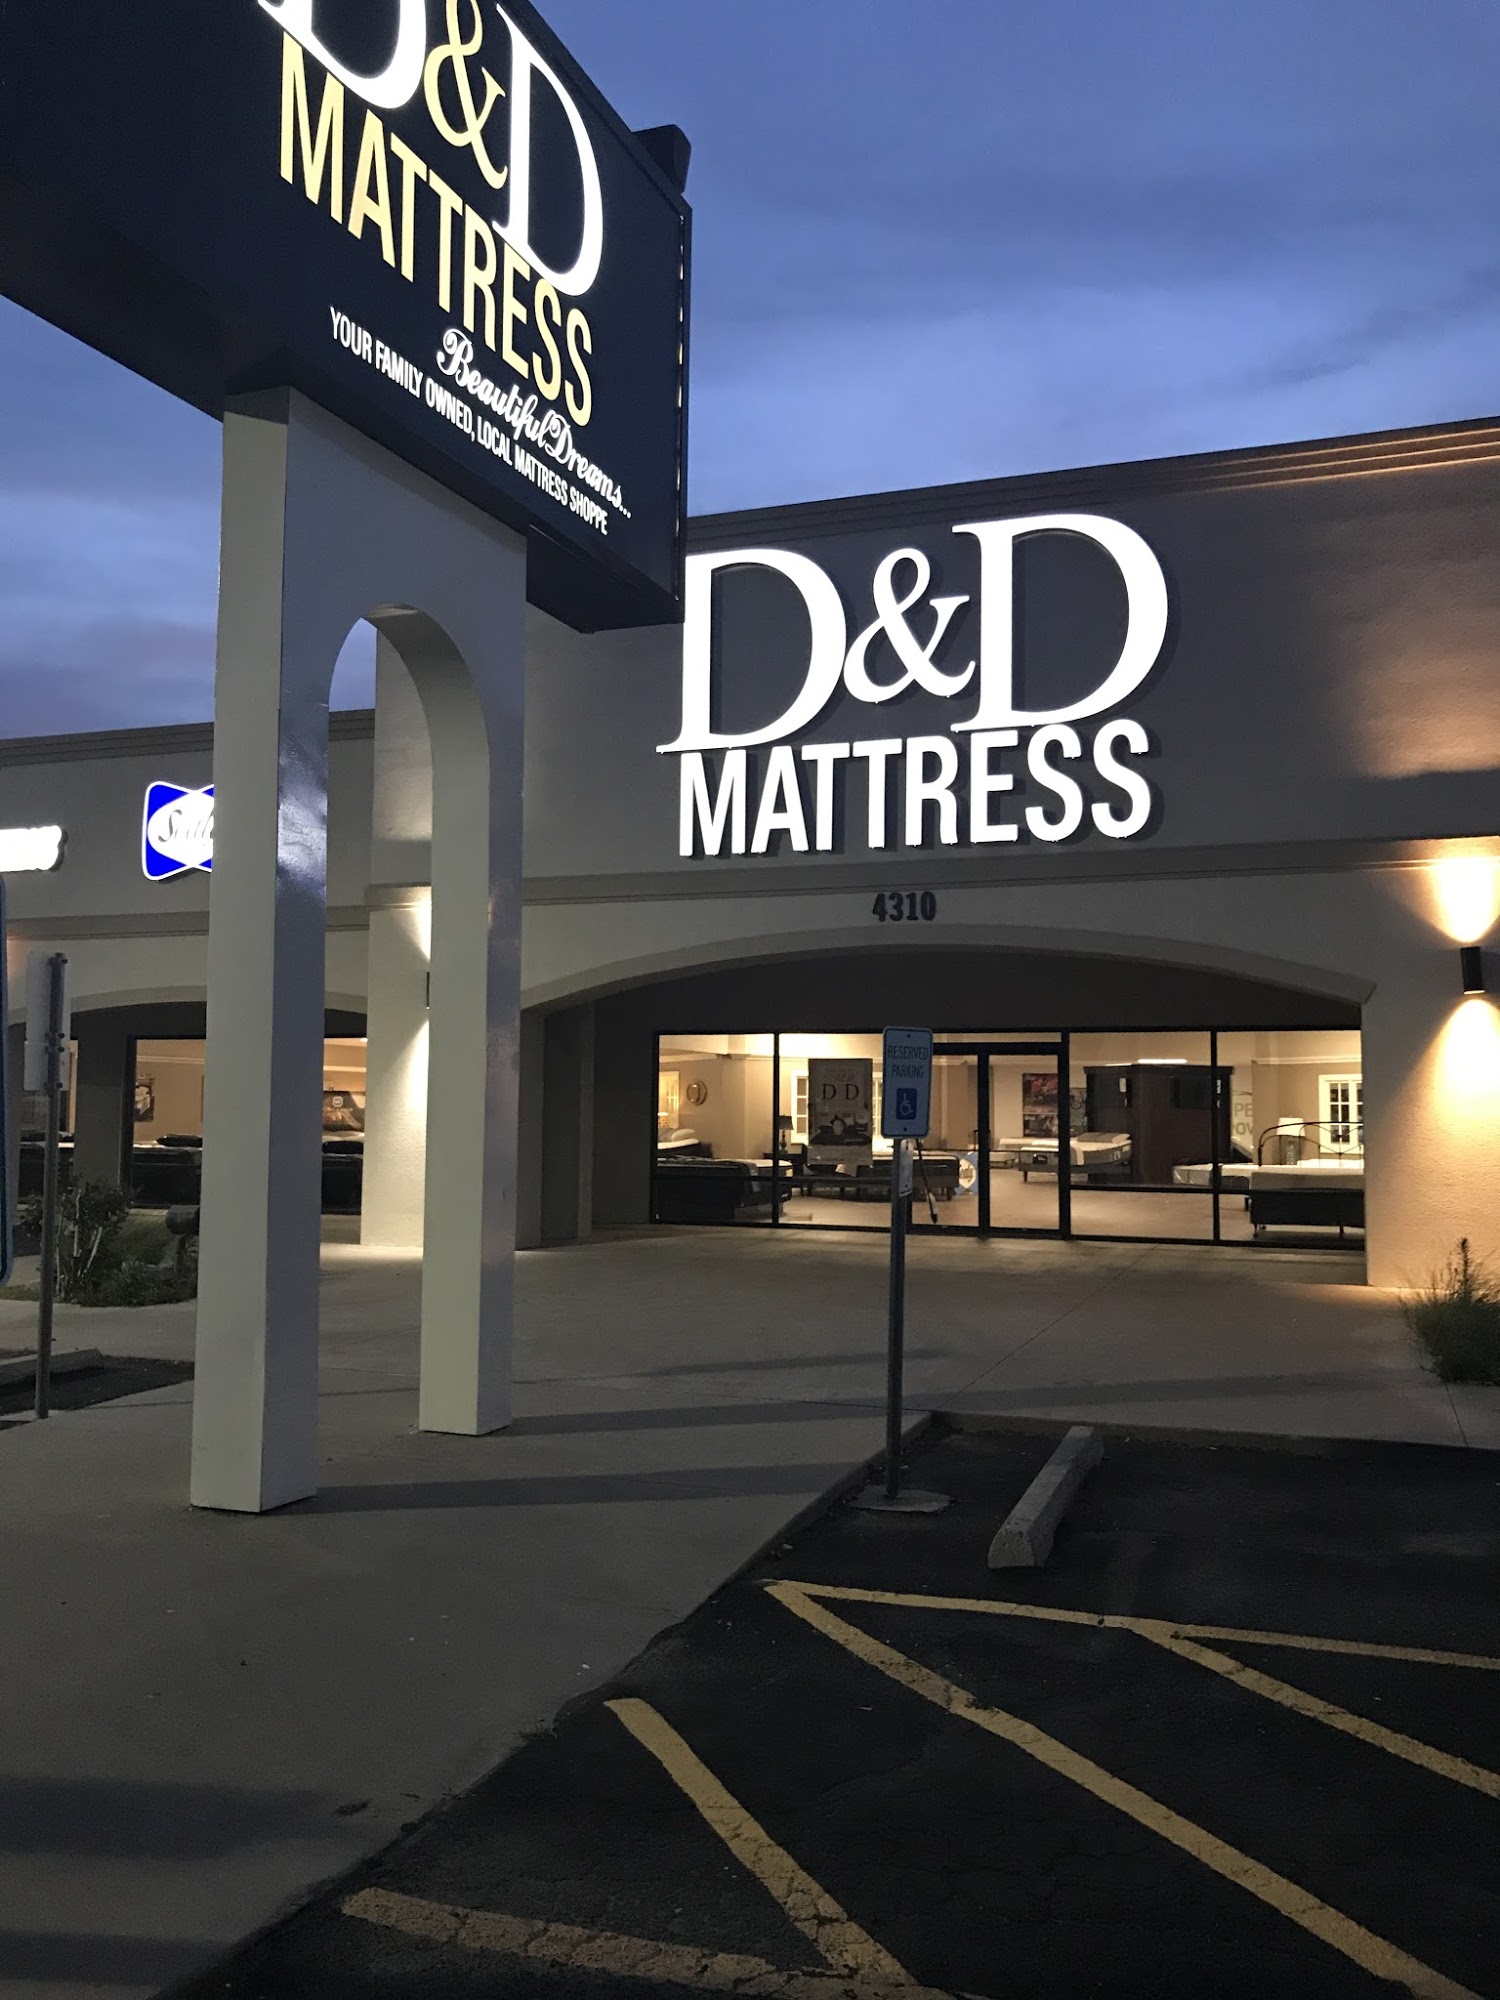 D & D Mattress